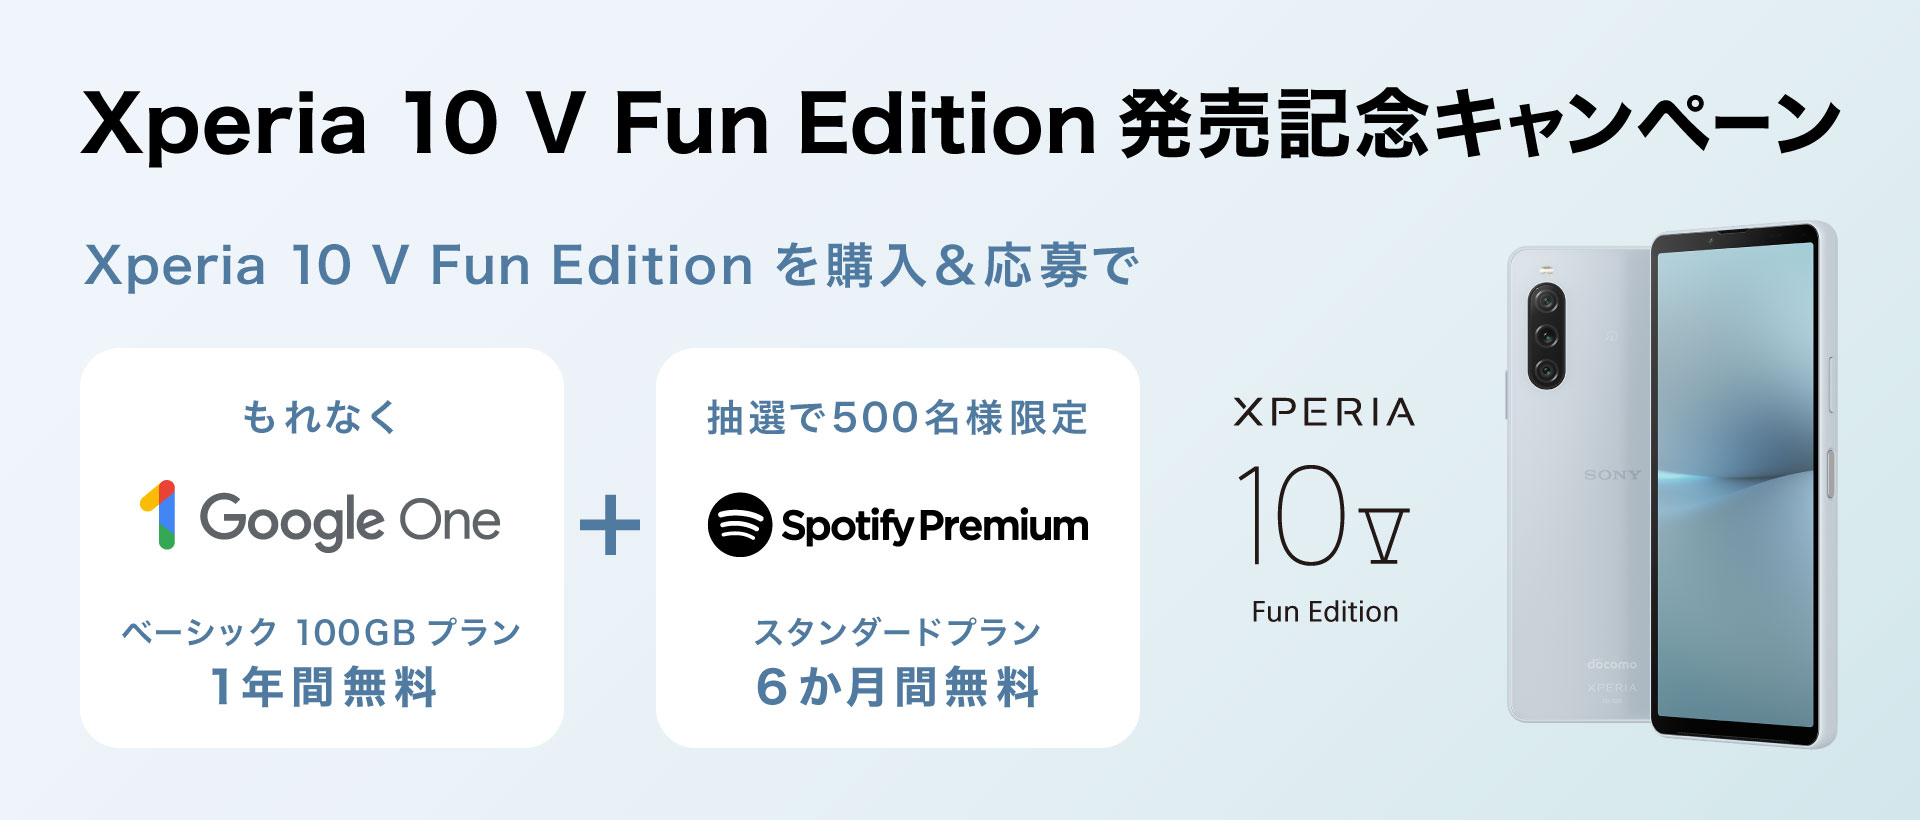 ドコモ Xperia 10 V Fun Edition発売記念キャンペーン